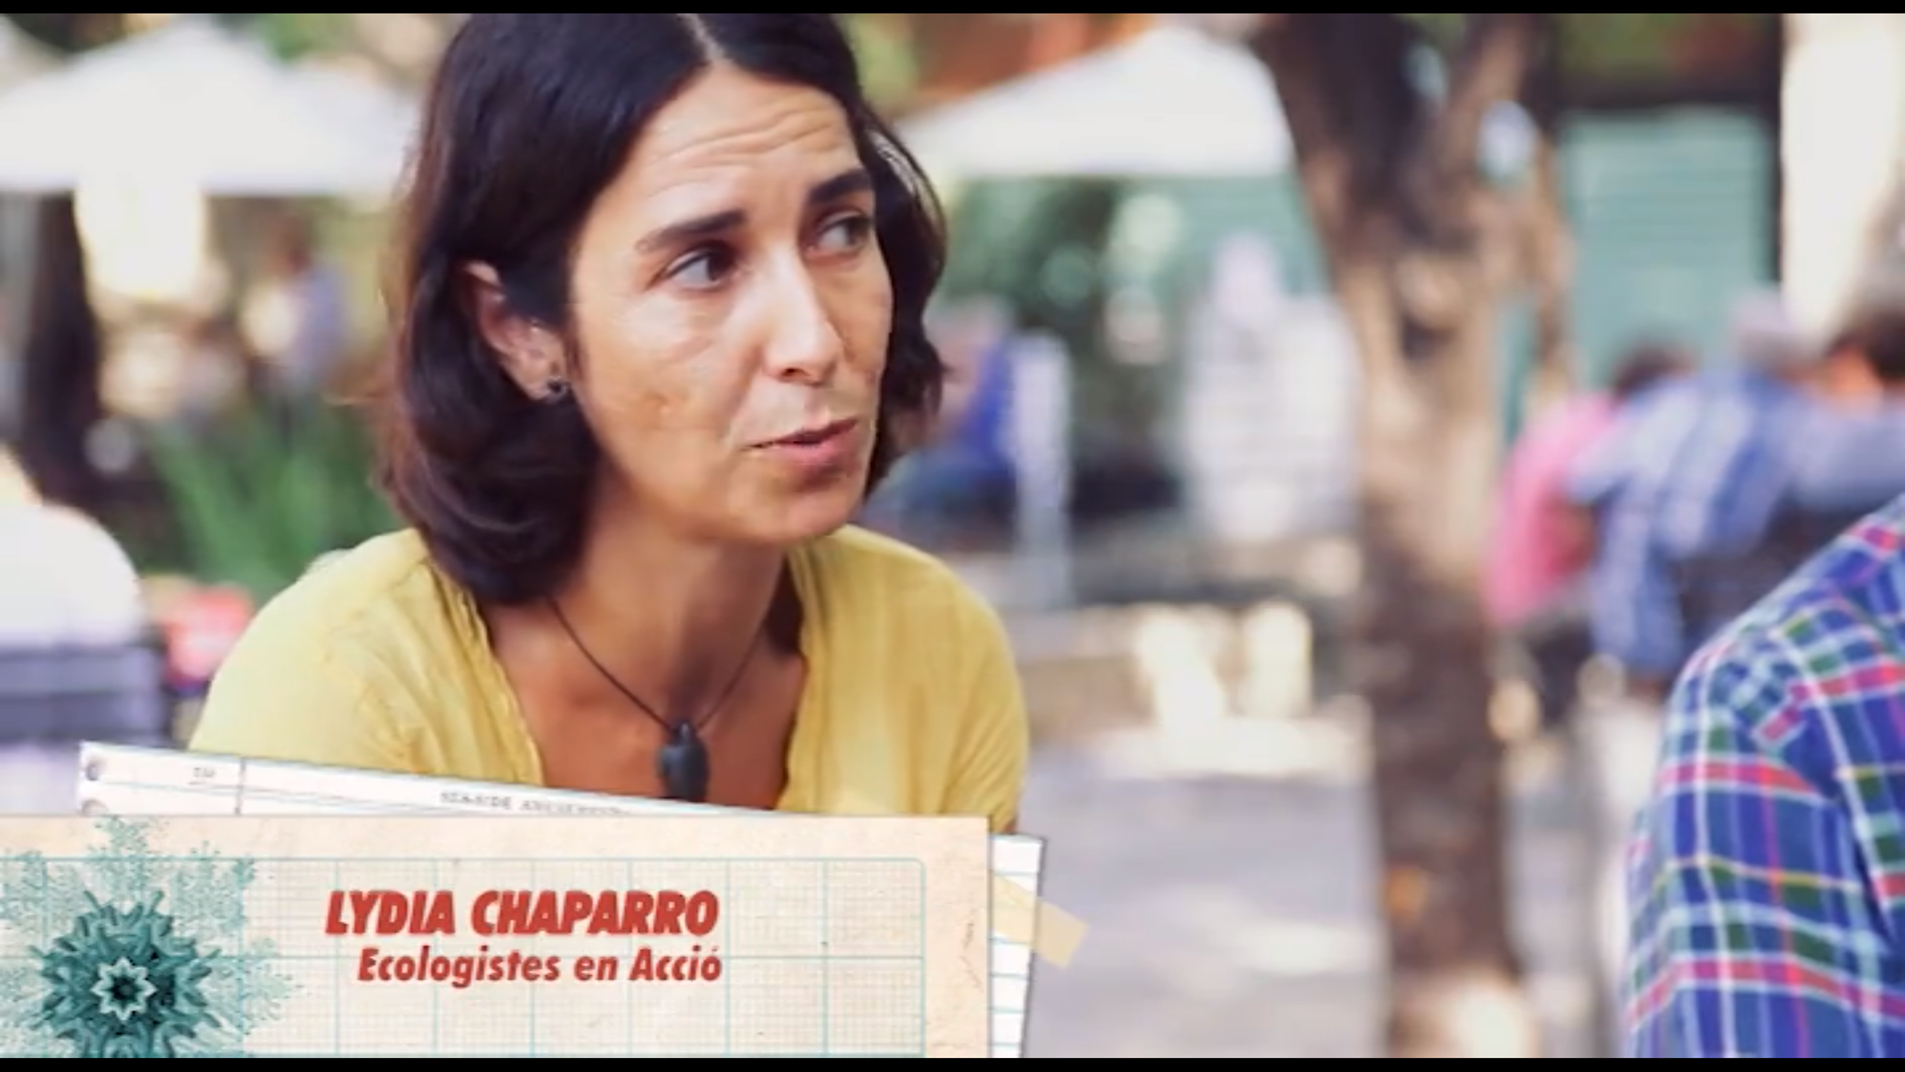 Lydia Chaparro participa al programa “La barca de l’Andreu” parlant sobre pesca sostenible i aqüicultura